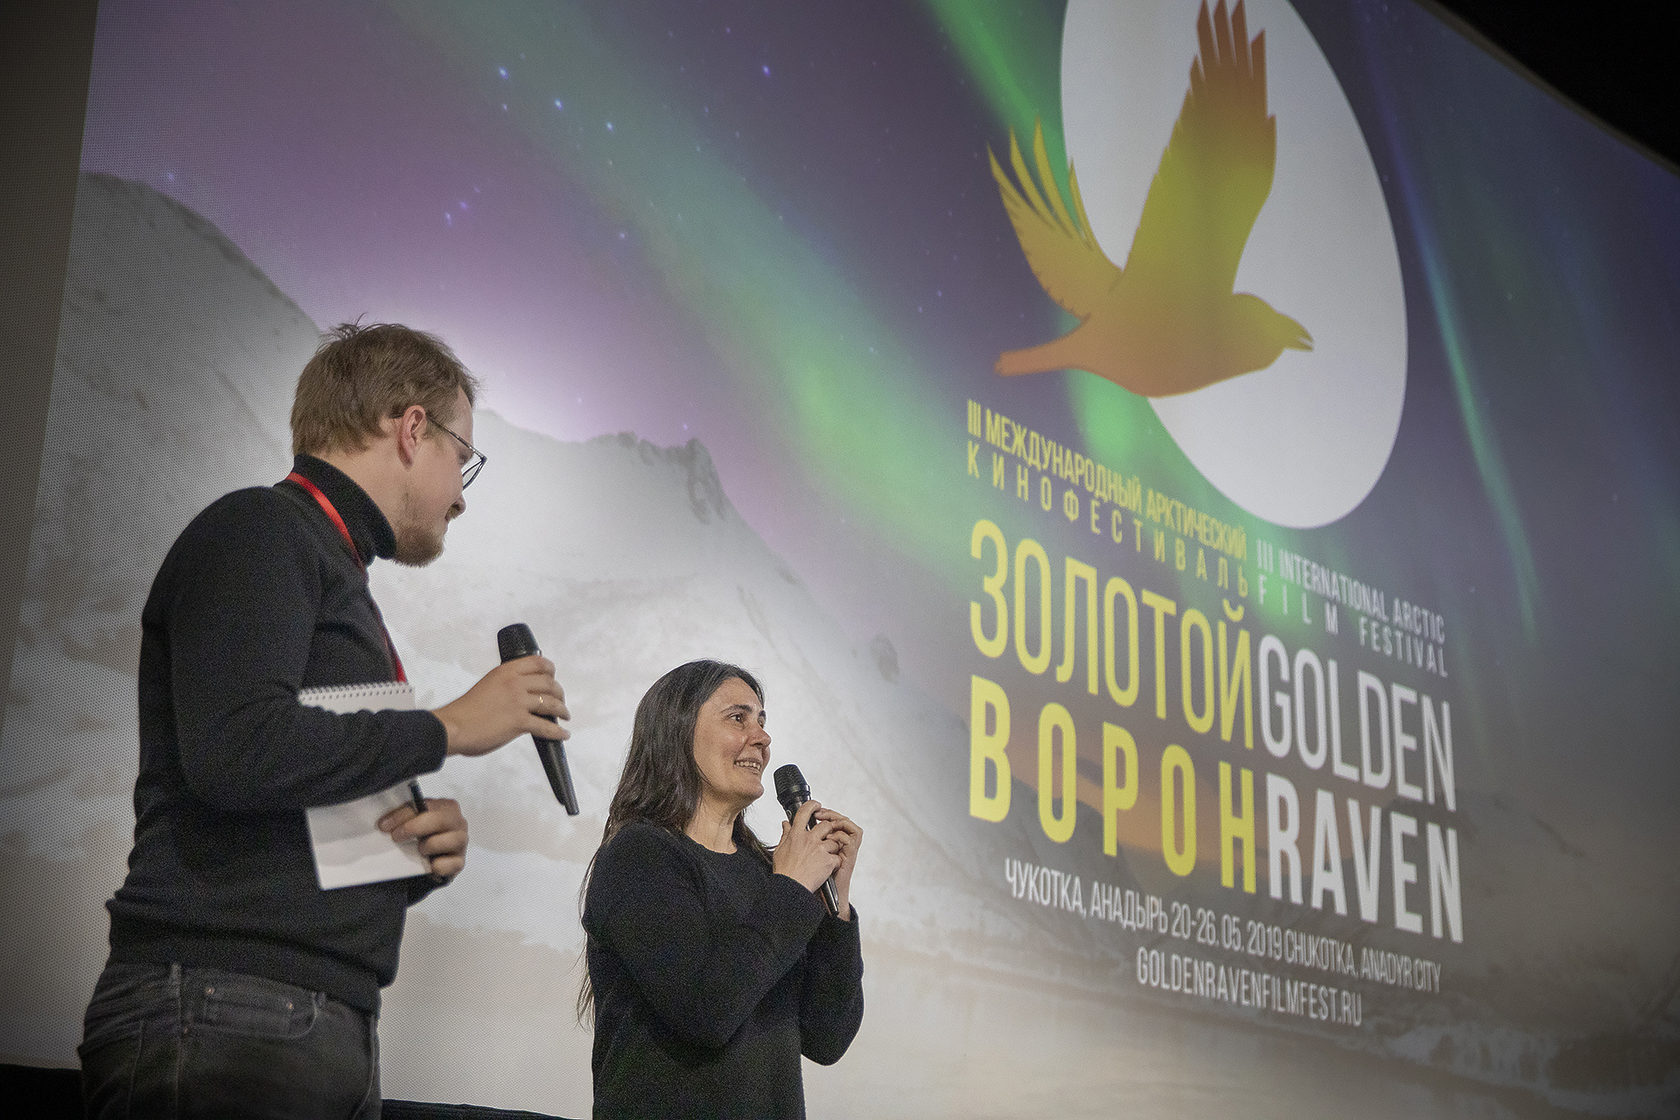 IV Международный арктический кинофестиваль “Золотой ворон” пройдет в Анадыре в марте 2020 года